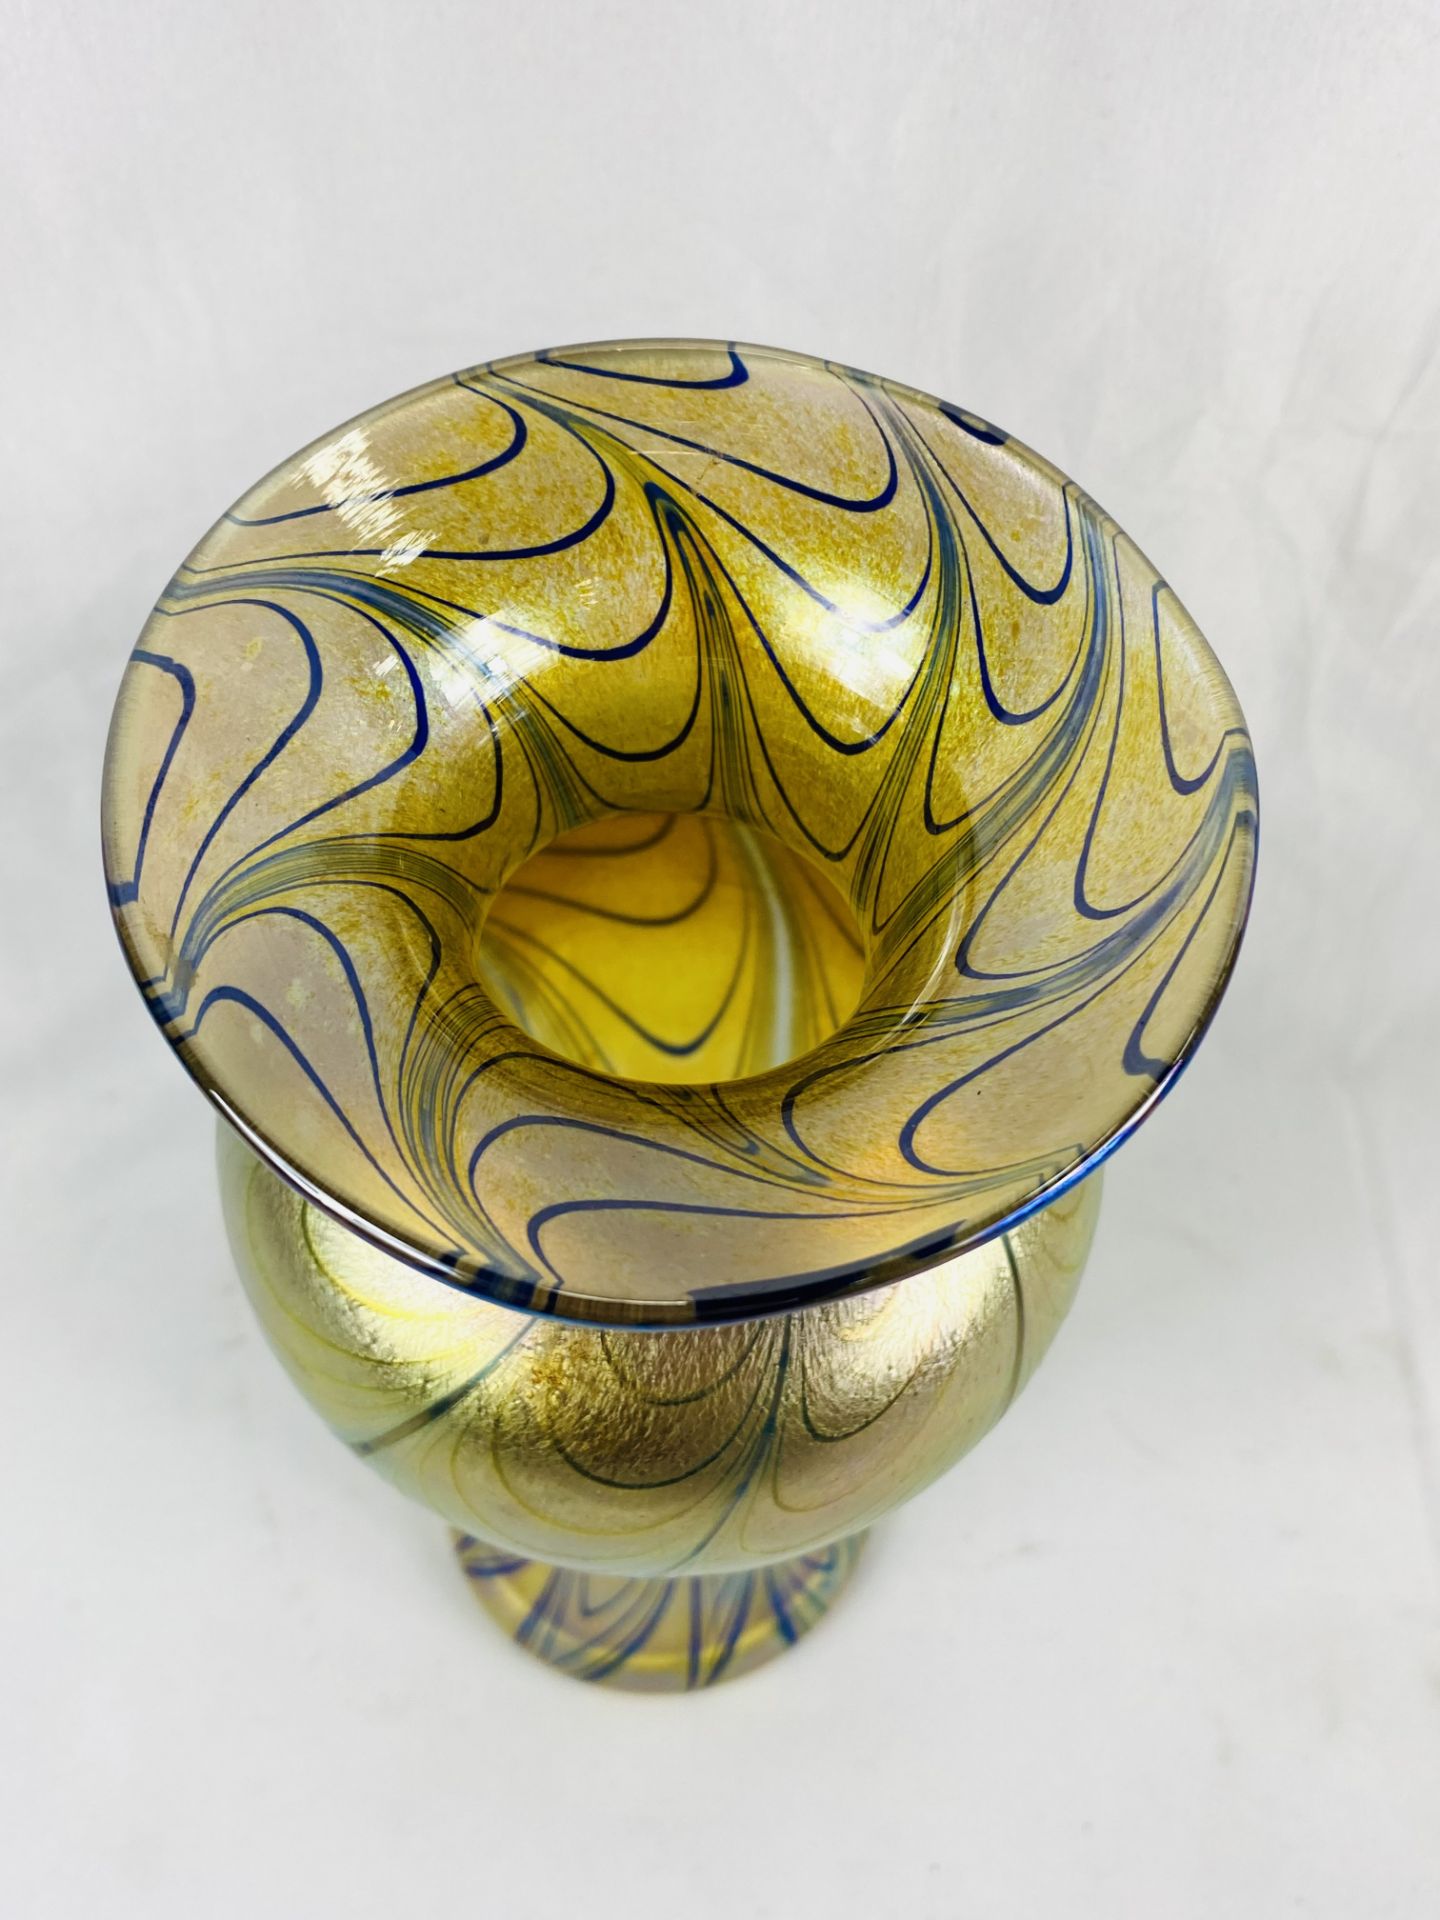 Robert Held iridescent glass vase - Image 3 of 4